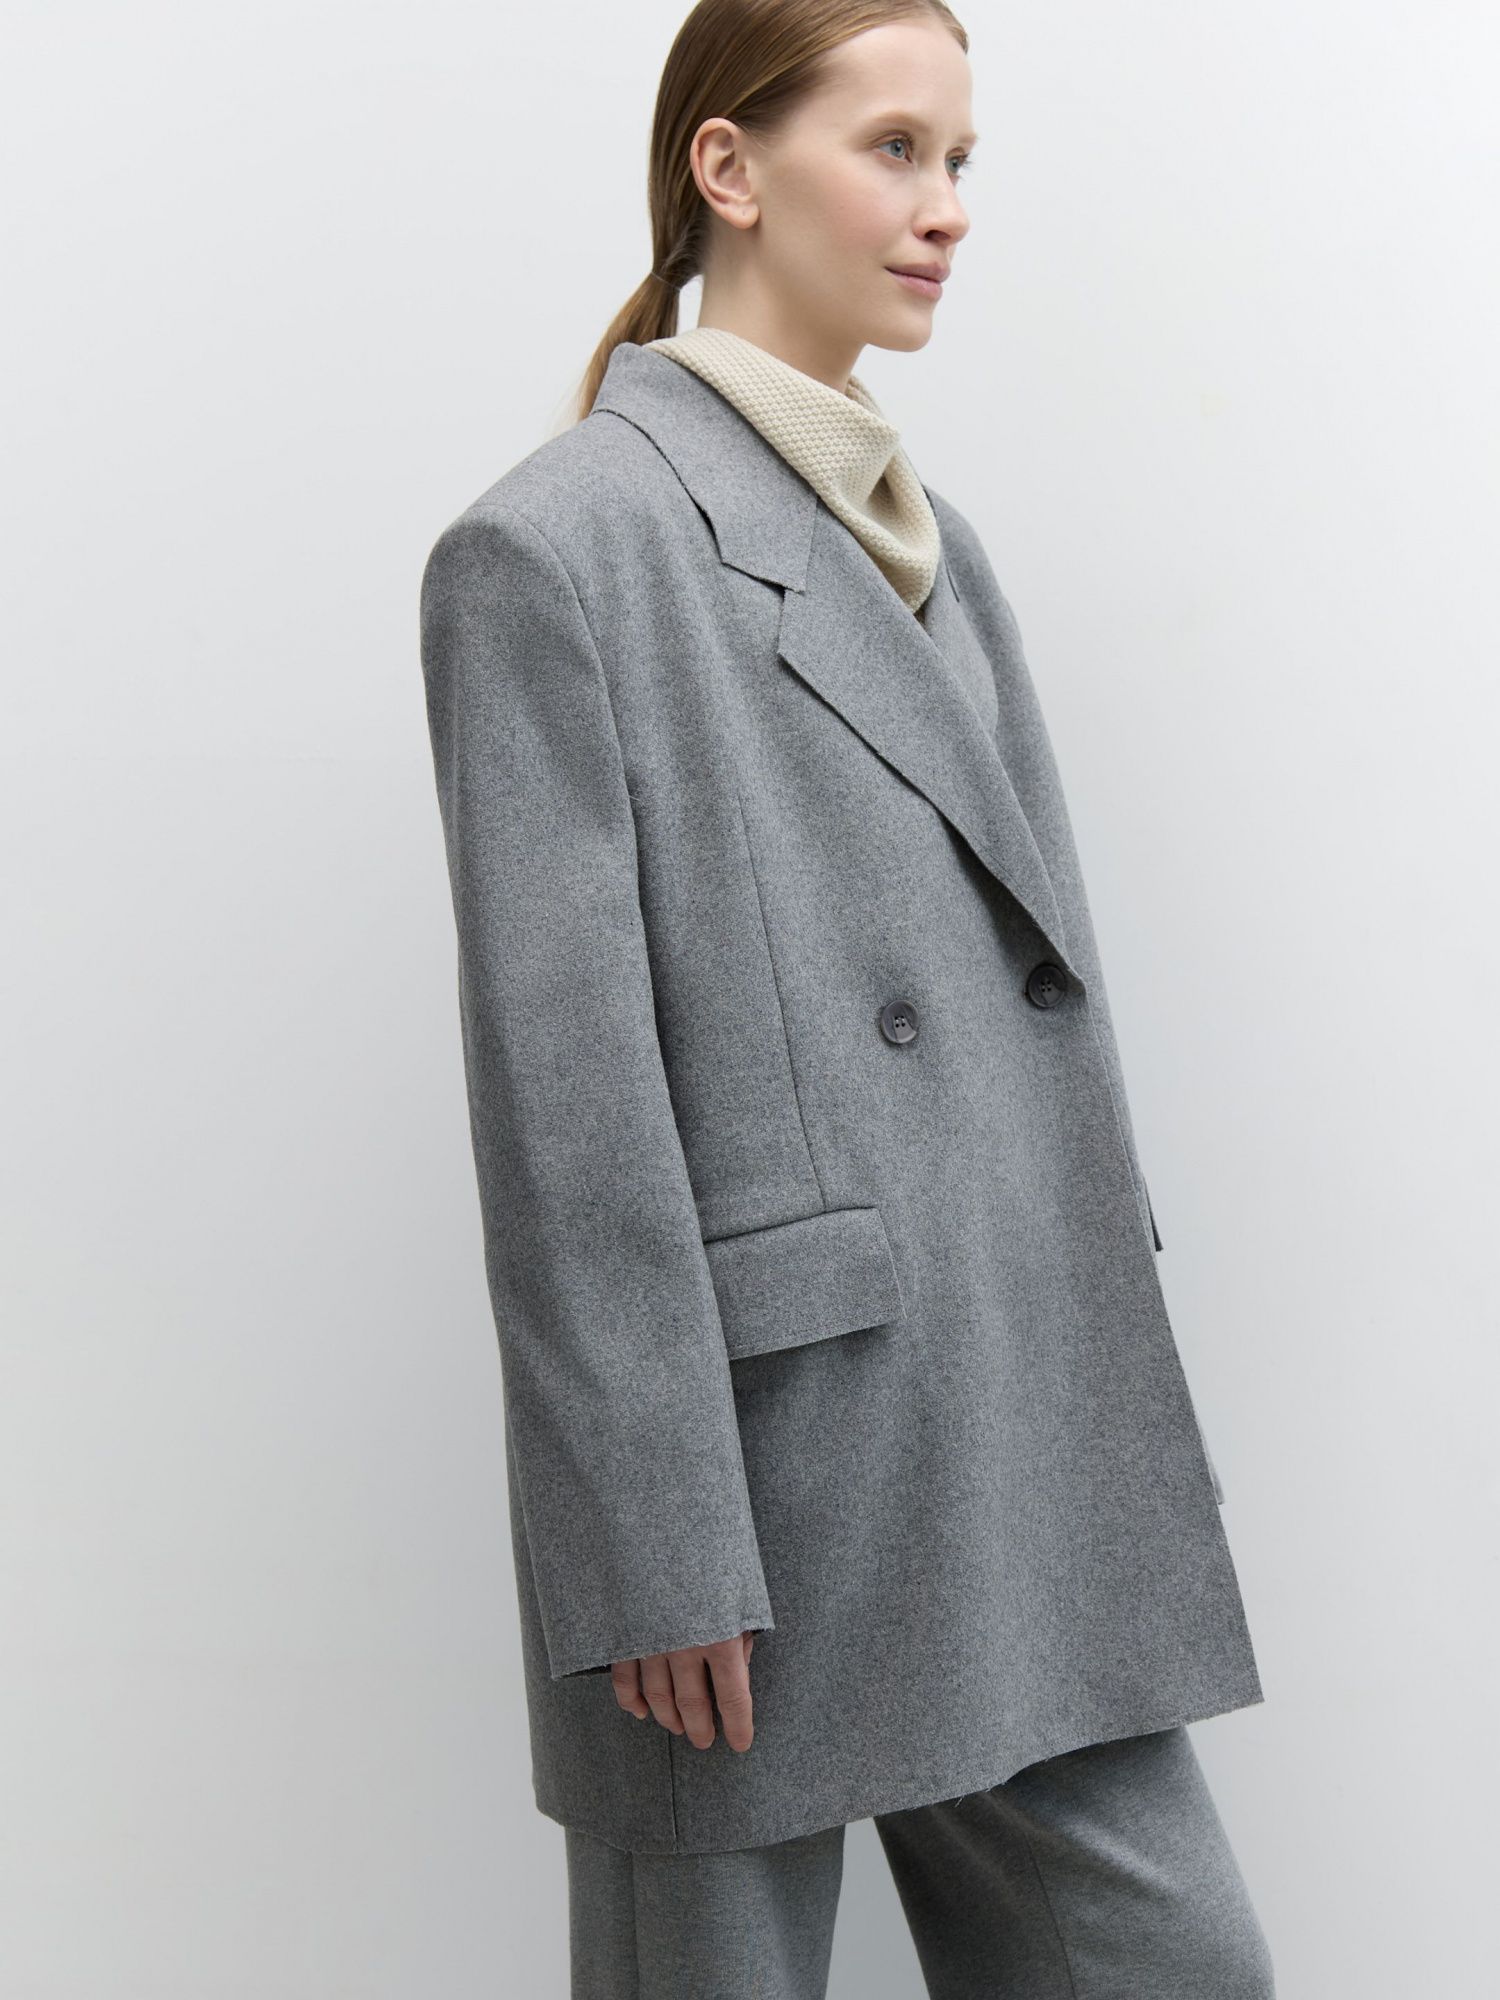 Жакет-пальто из итальянской шерсти серый - фото 4. Around